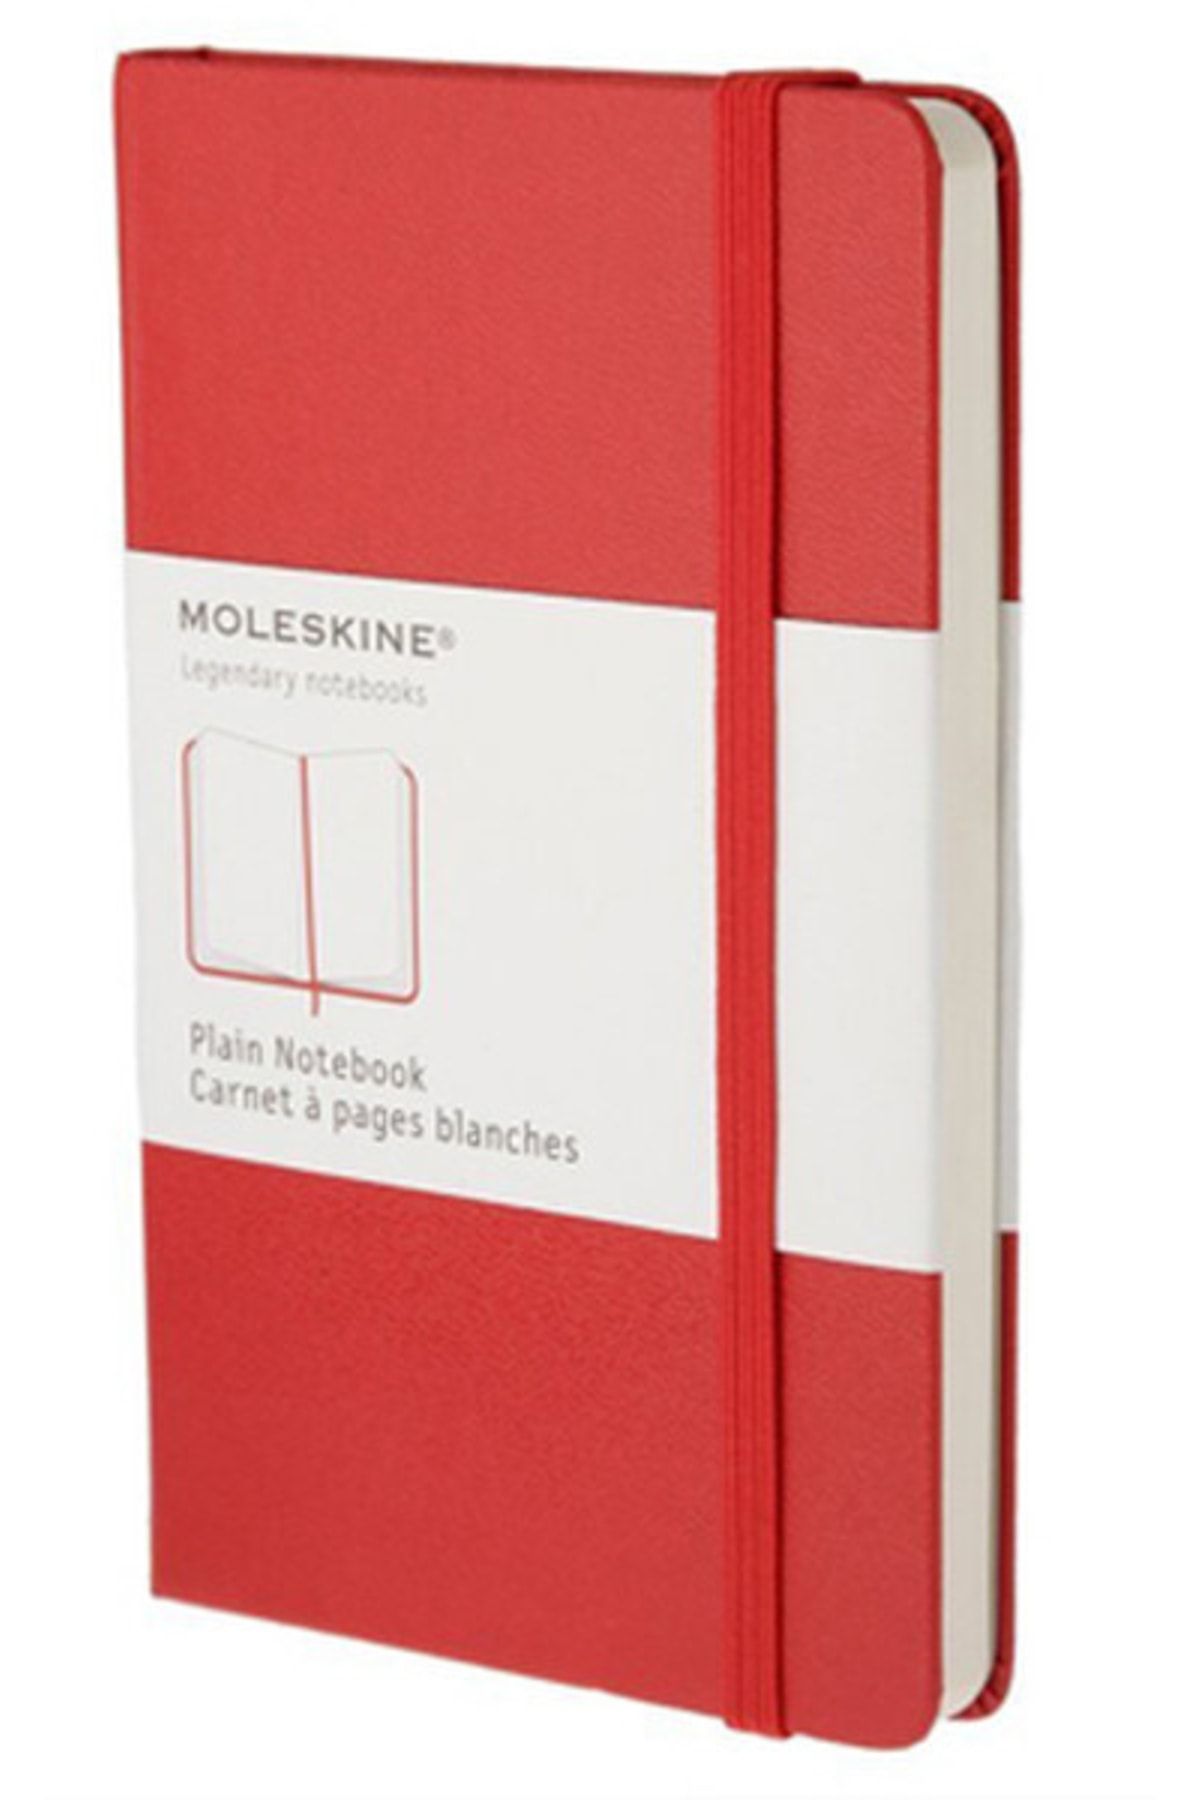 Moleskine Large Plain Notebook Kirmizi (düz) Hardcover